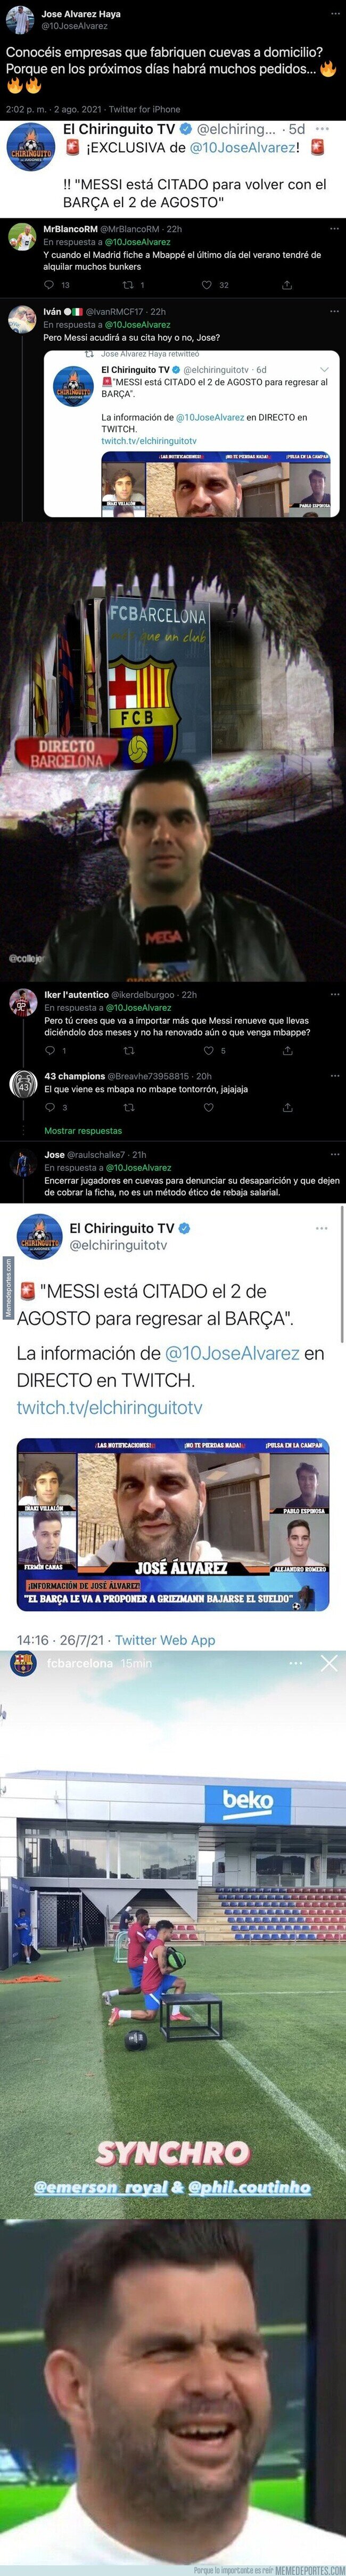 1141200 - El ridículo monumental de este personaje de 'El Chiringuito' tras dar esta noticia sobre Messi